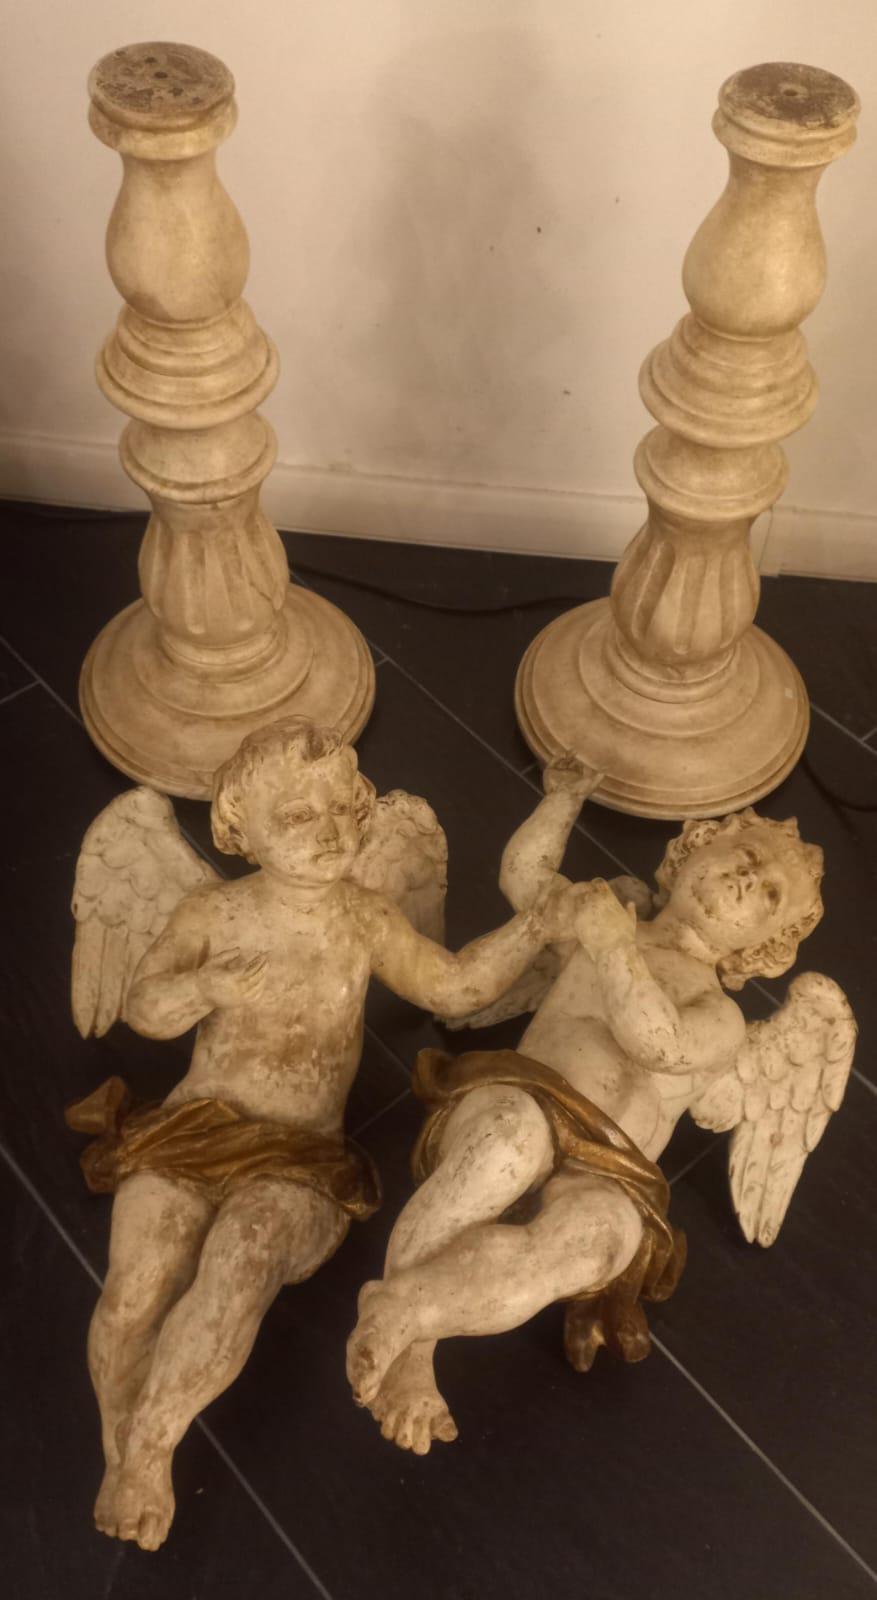 Paar geflügelte Engel aus lackiertem Marmorimitat, sitzend, 18. Jahrhundert, auf zwei gedrechselten, lackierten Holzsockeln neuerer Produktion, Gesamthöhe 102 cm, Sockeldurchmesser 30 cm, Höhe der Engel allein 57 cm.
Die Engel sind mit abnehmbaren